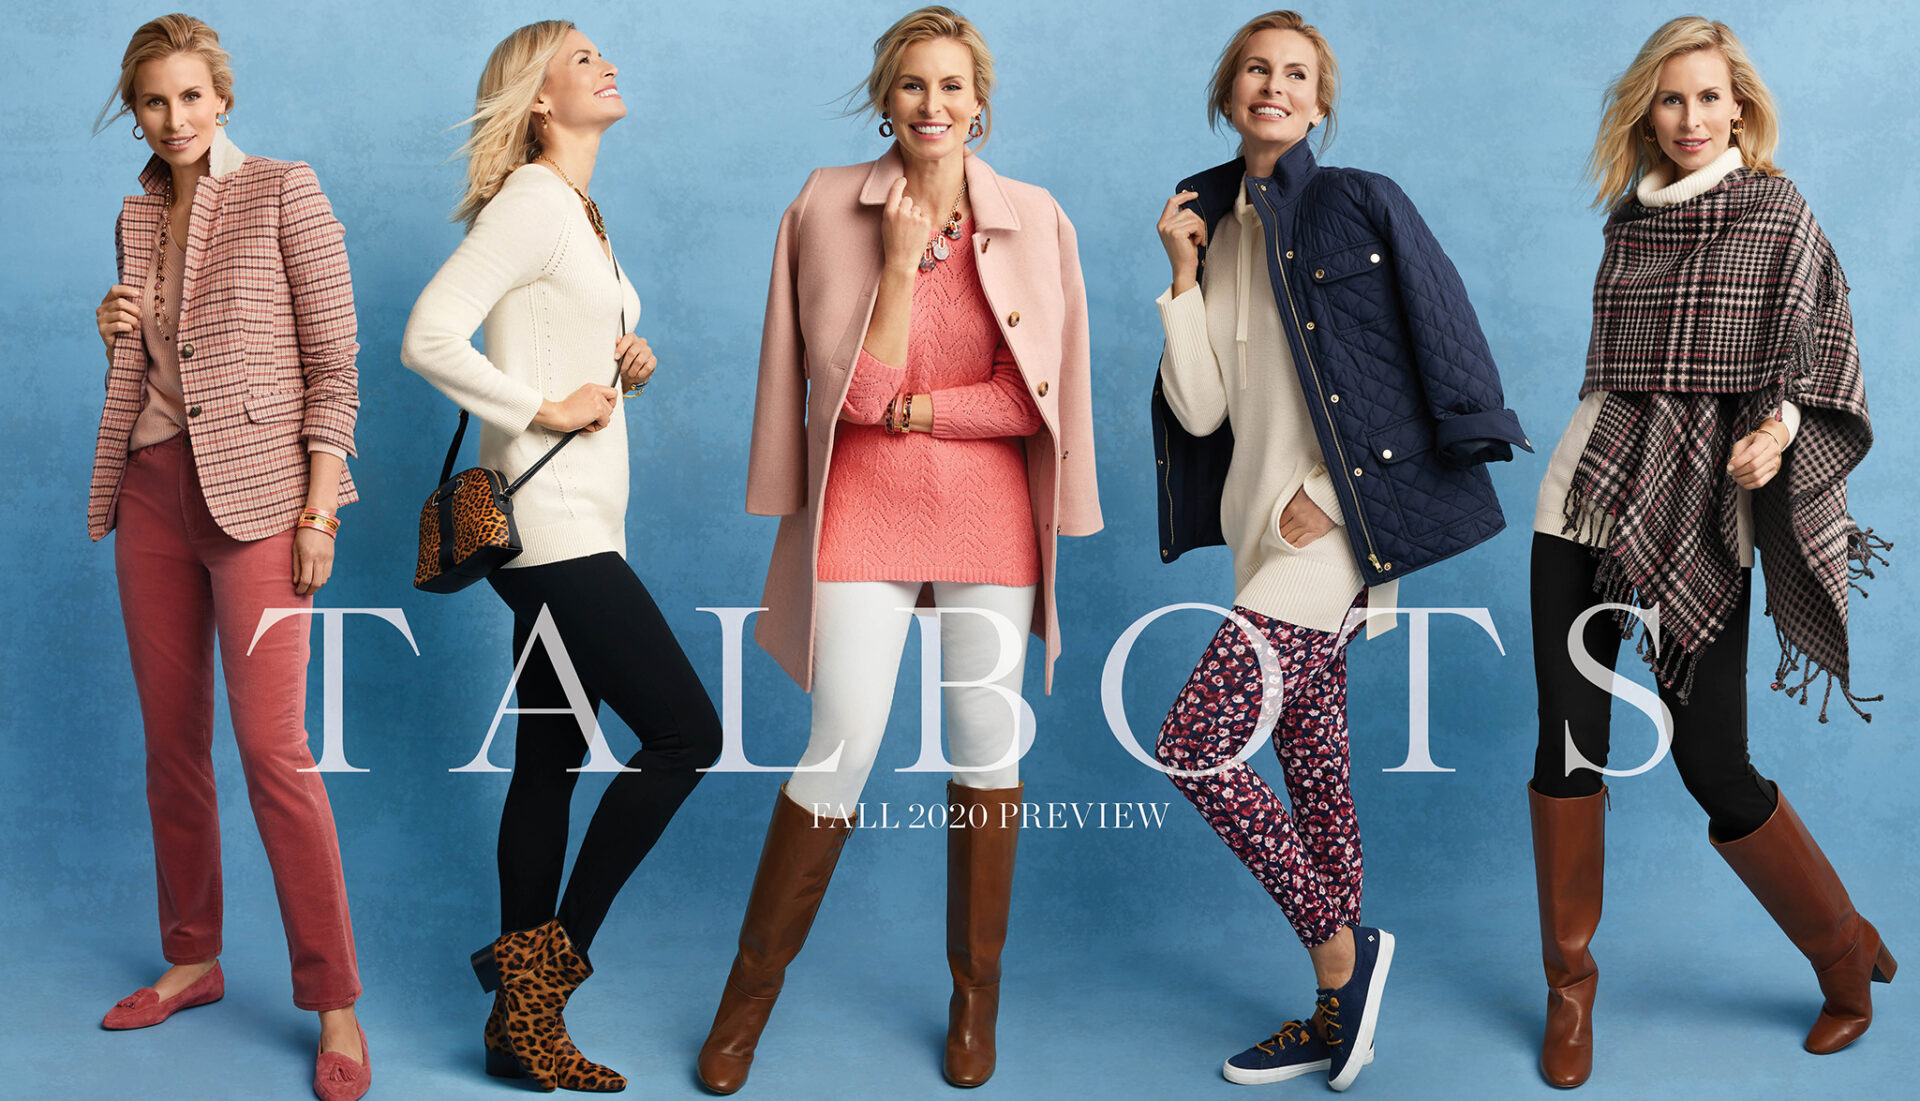 Fall 2020 Preview Talbots Lookbooks